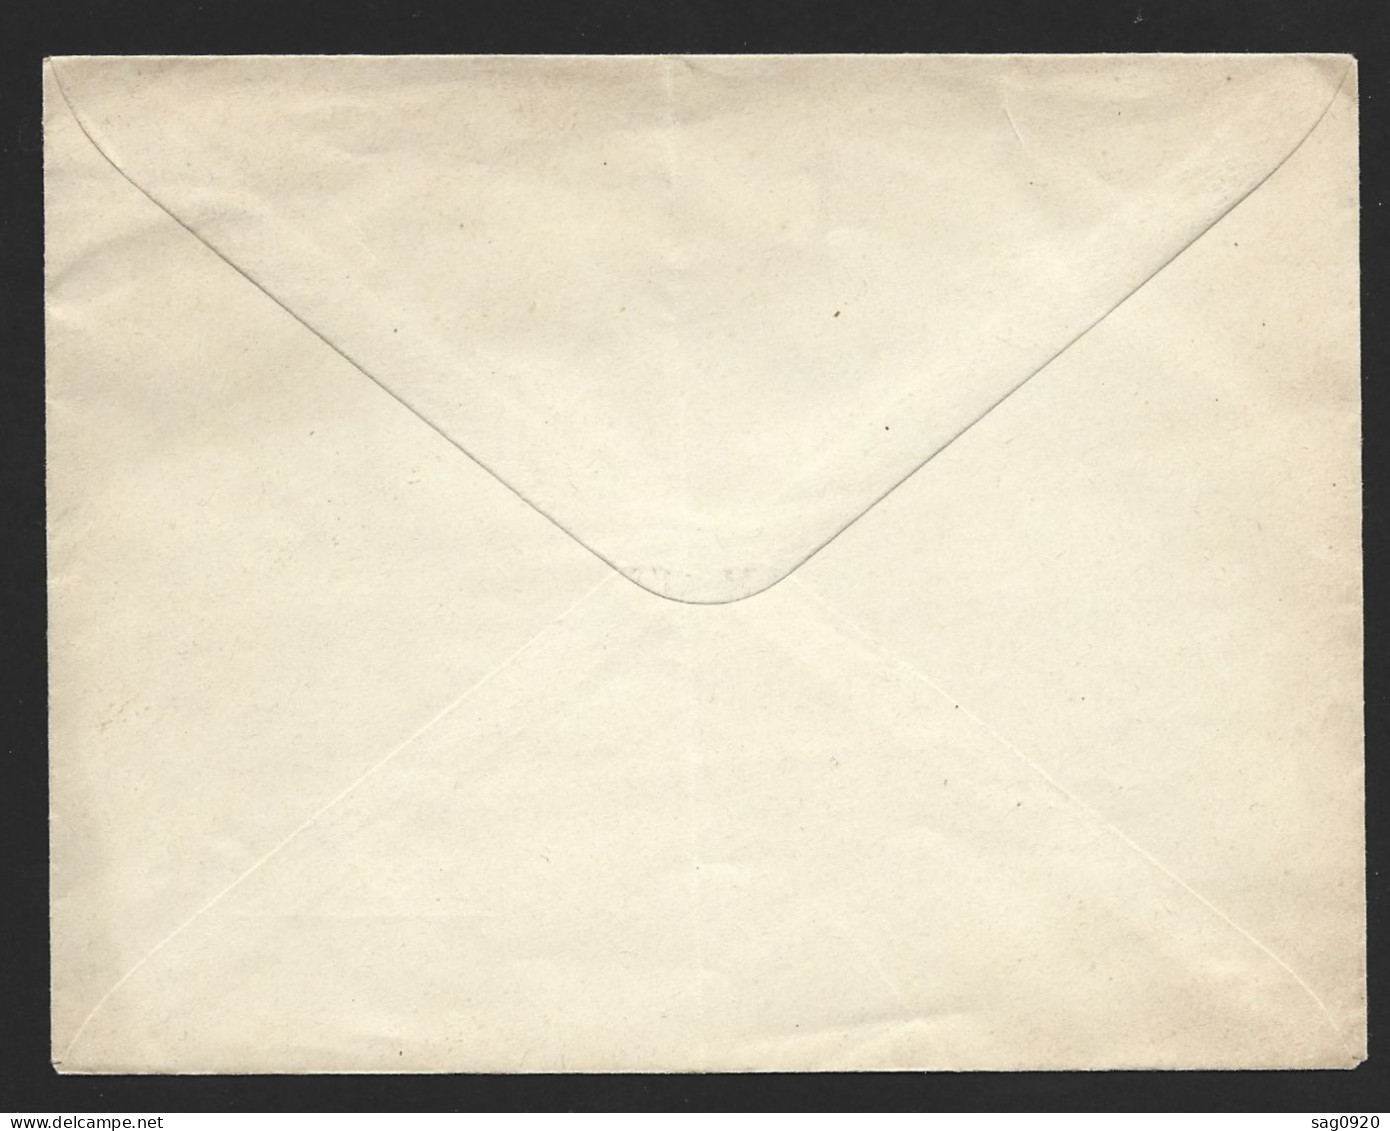 Entier Postal-Enveloppe Type Paix Avec Repiquage Jammes & Wanecq - Postales  Transplantadas (antes 1995)